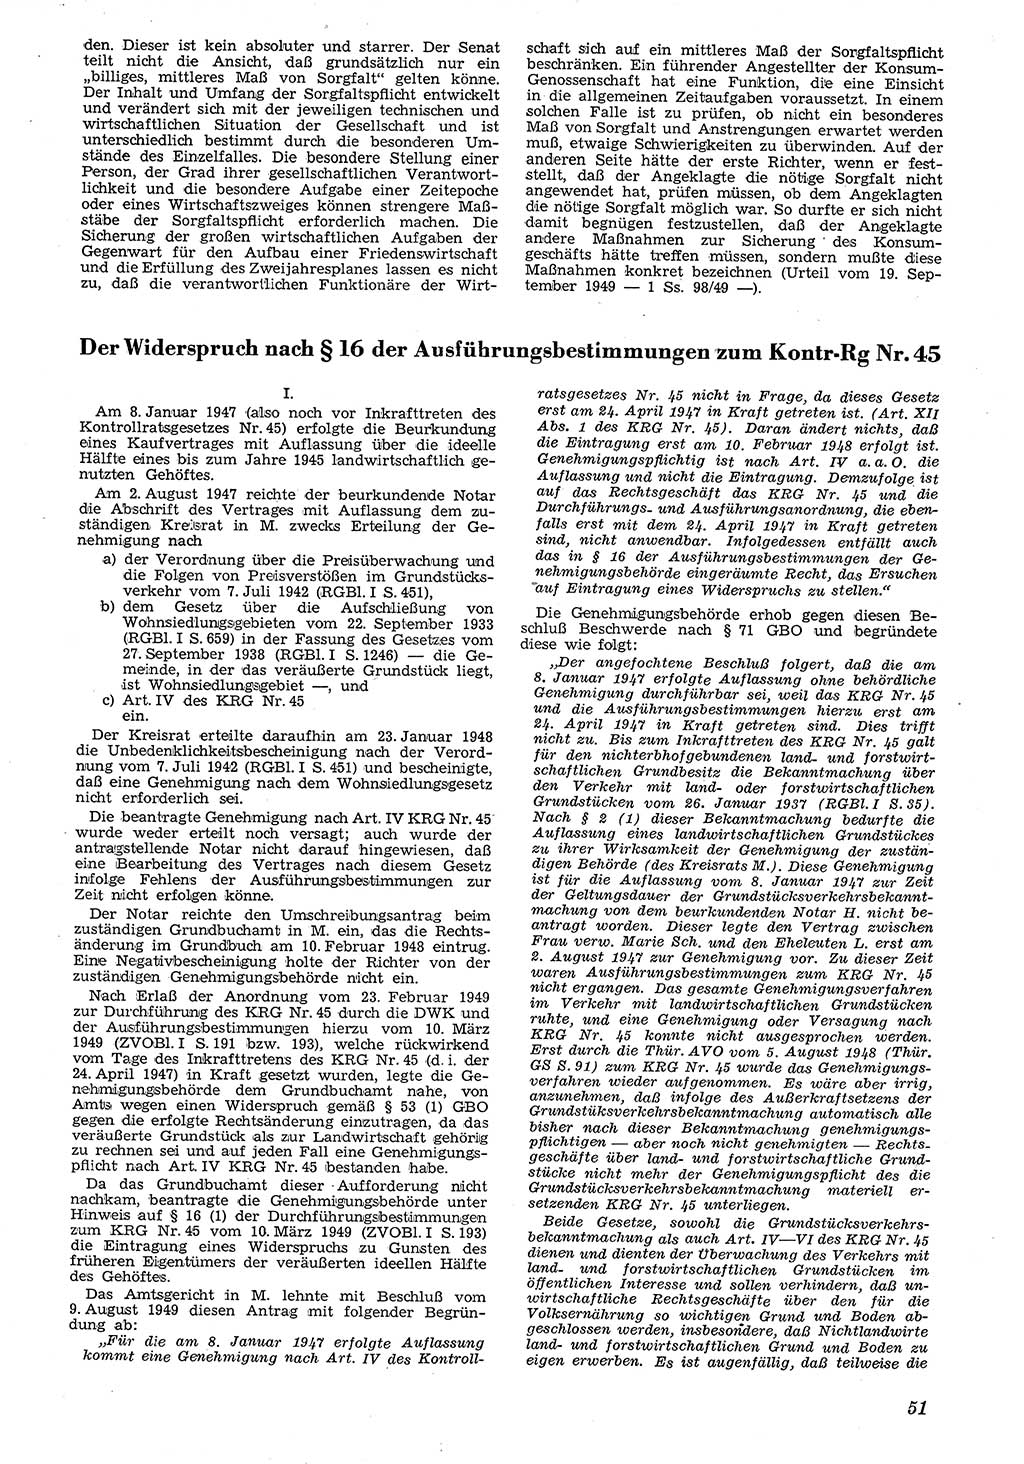 Neue Justiz (NJ), Zeitschrift für Recht und Rechtswissenschaft [Deutsche Demokratische Republik (DDR)], 4. Jahrgang 1950, Seite 51 (NJ DDR 1950, S. 51)